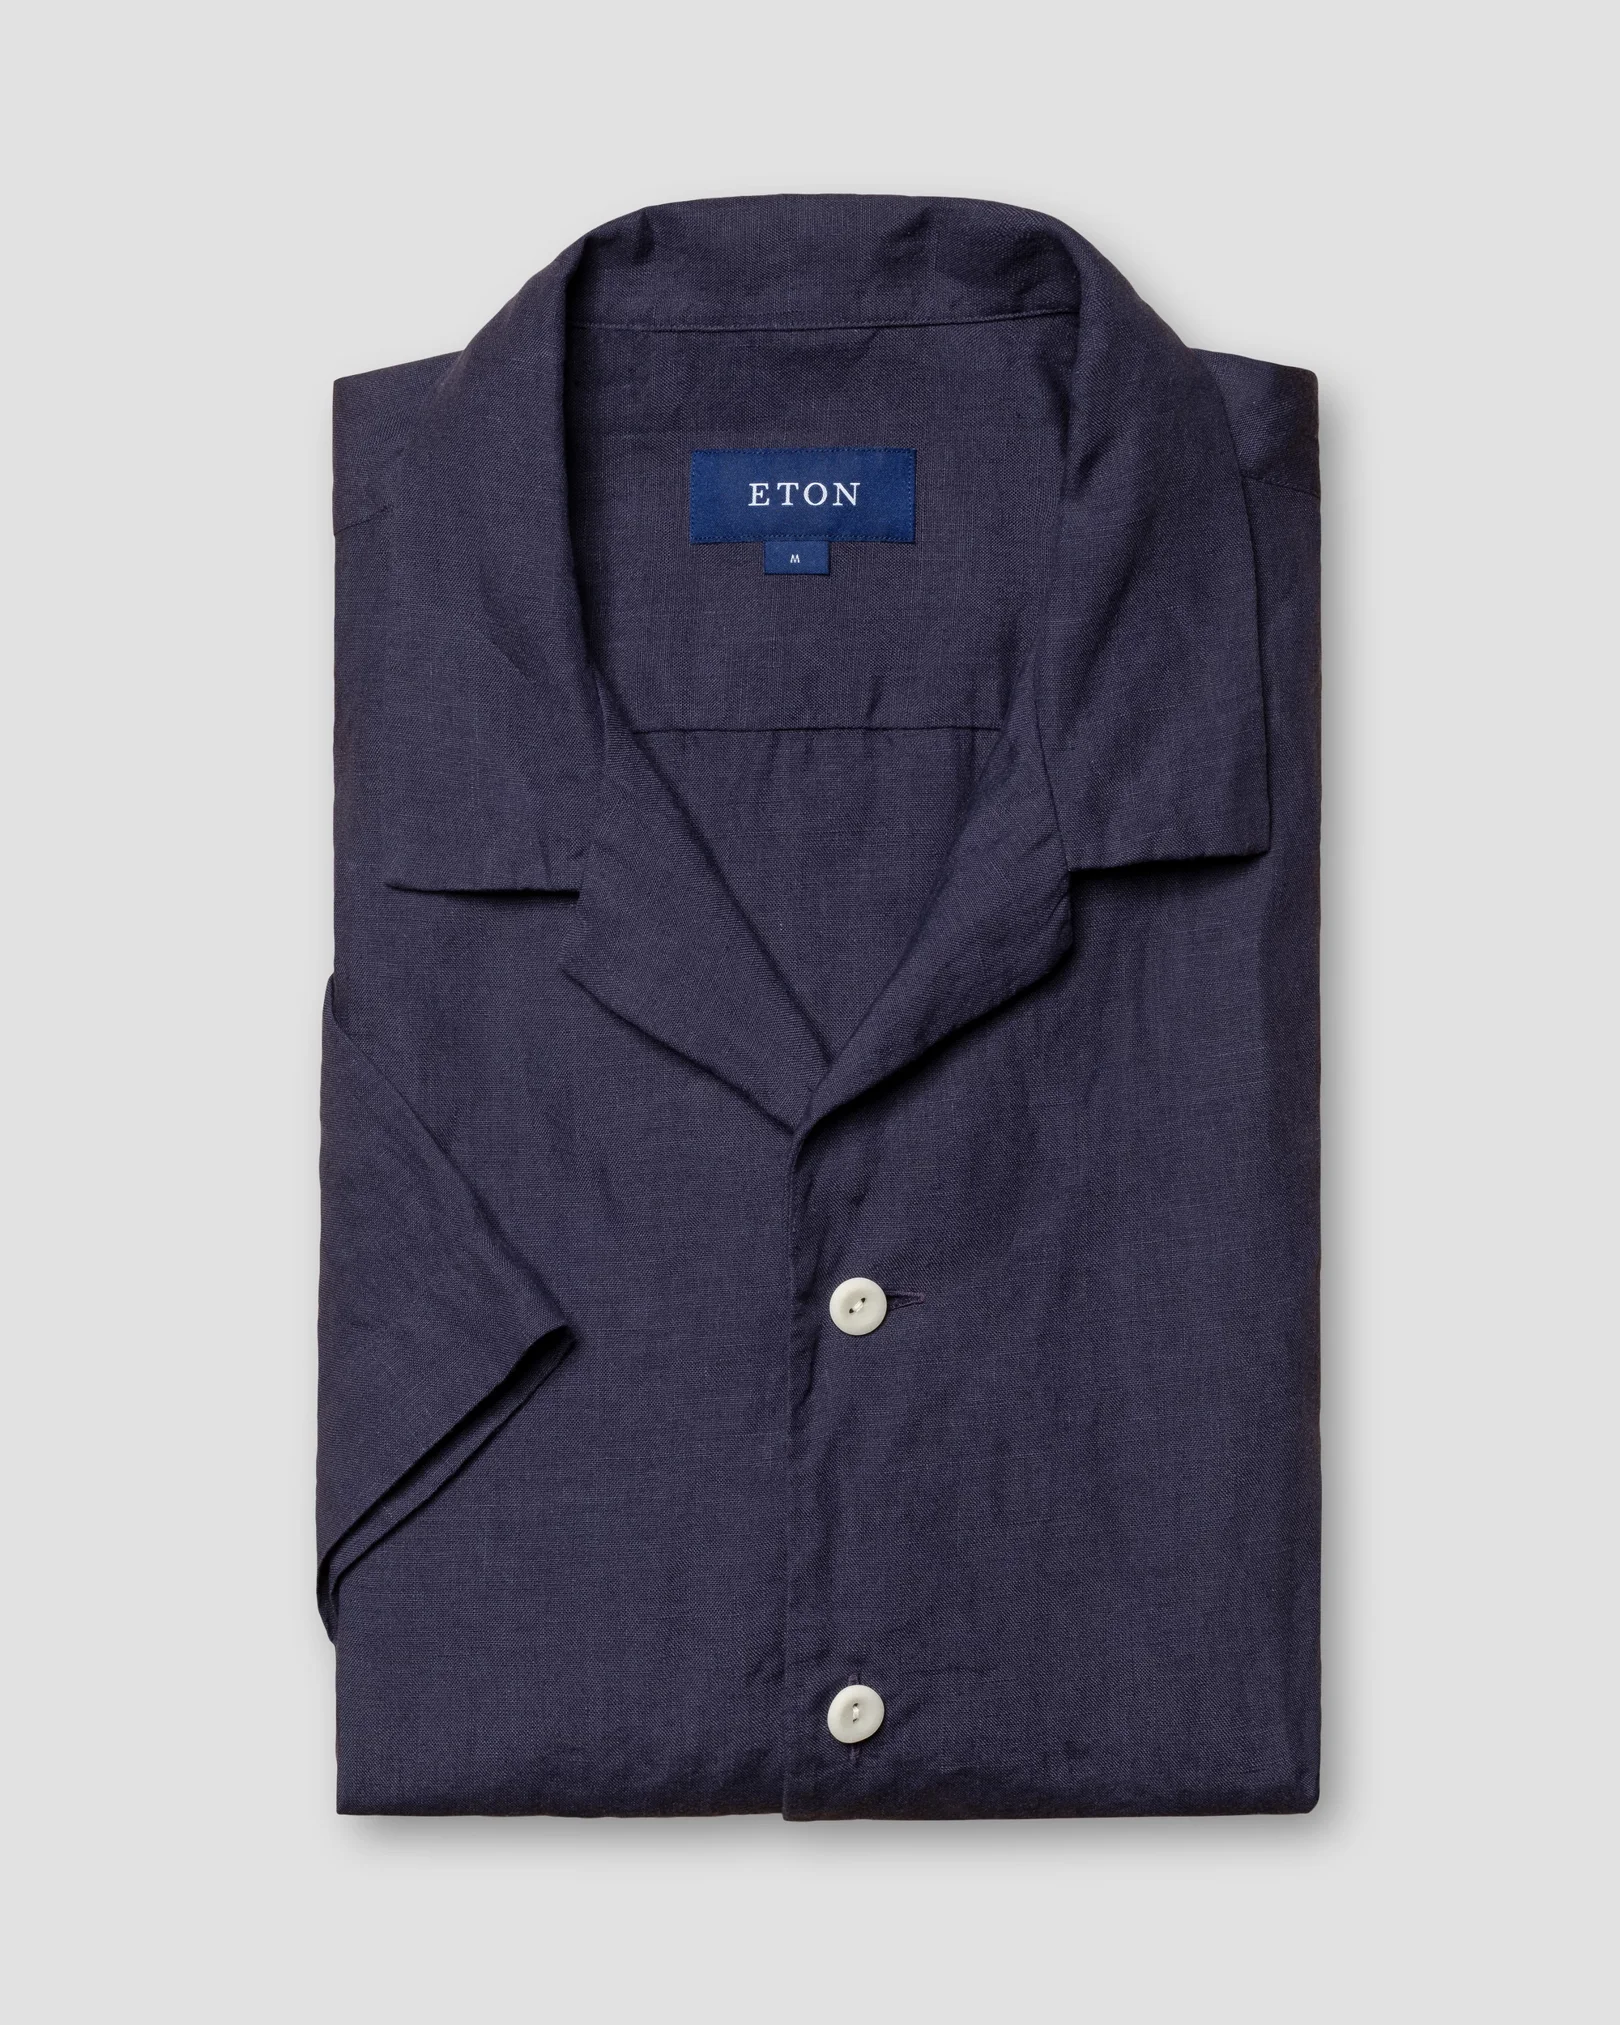 Eton - navy blue plain linen short sleeve